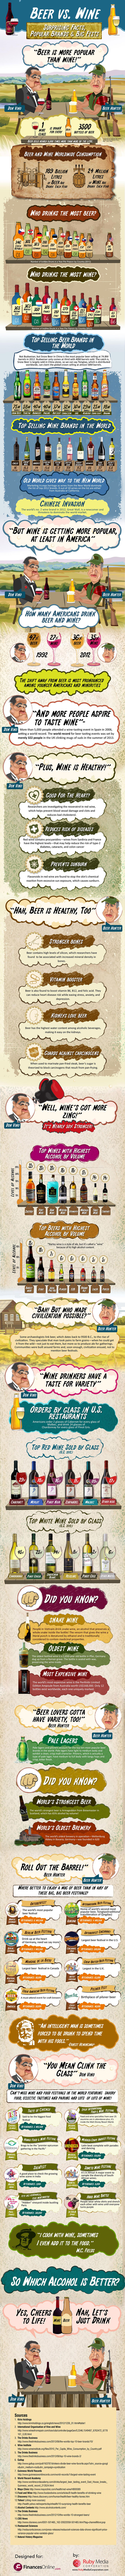 beer-vs-wine-infographic